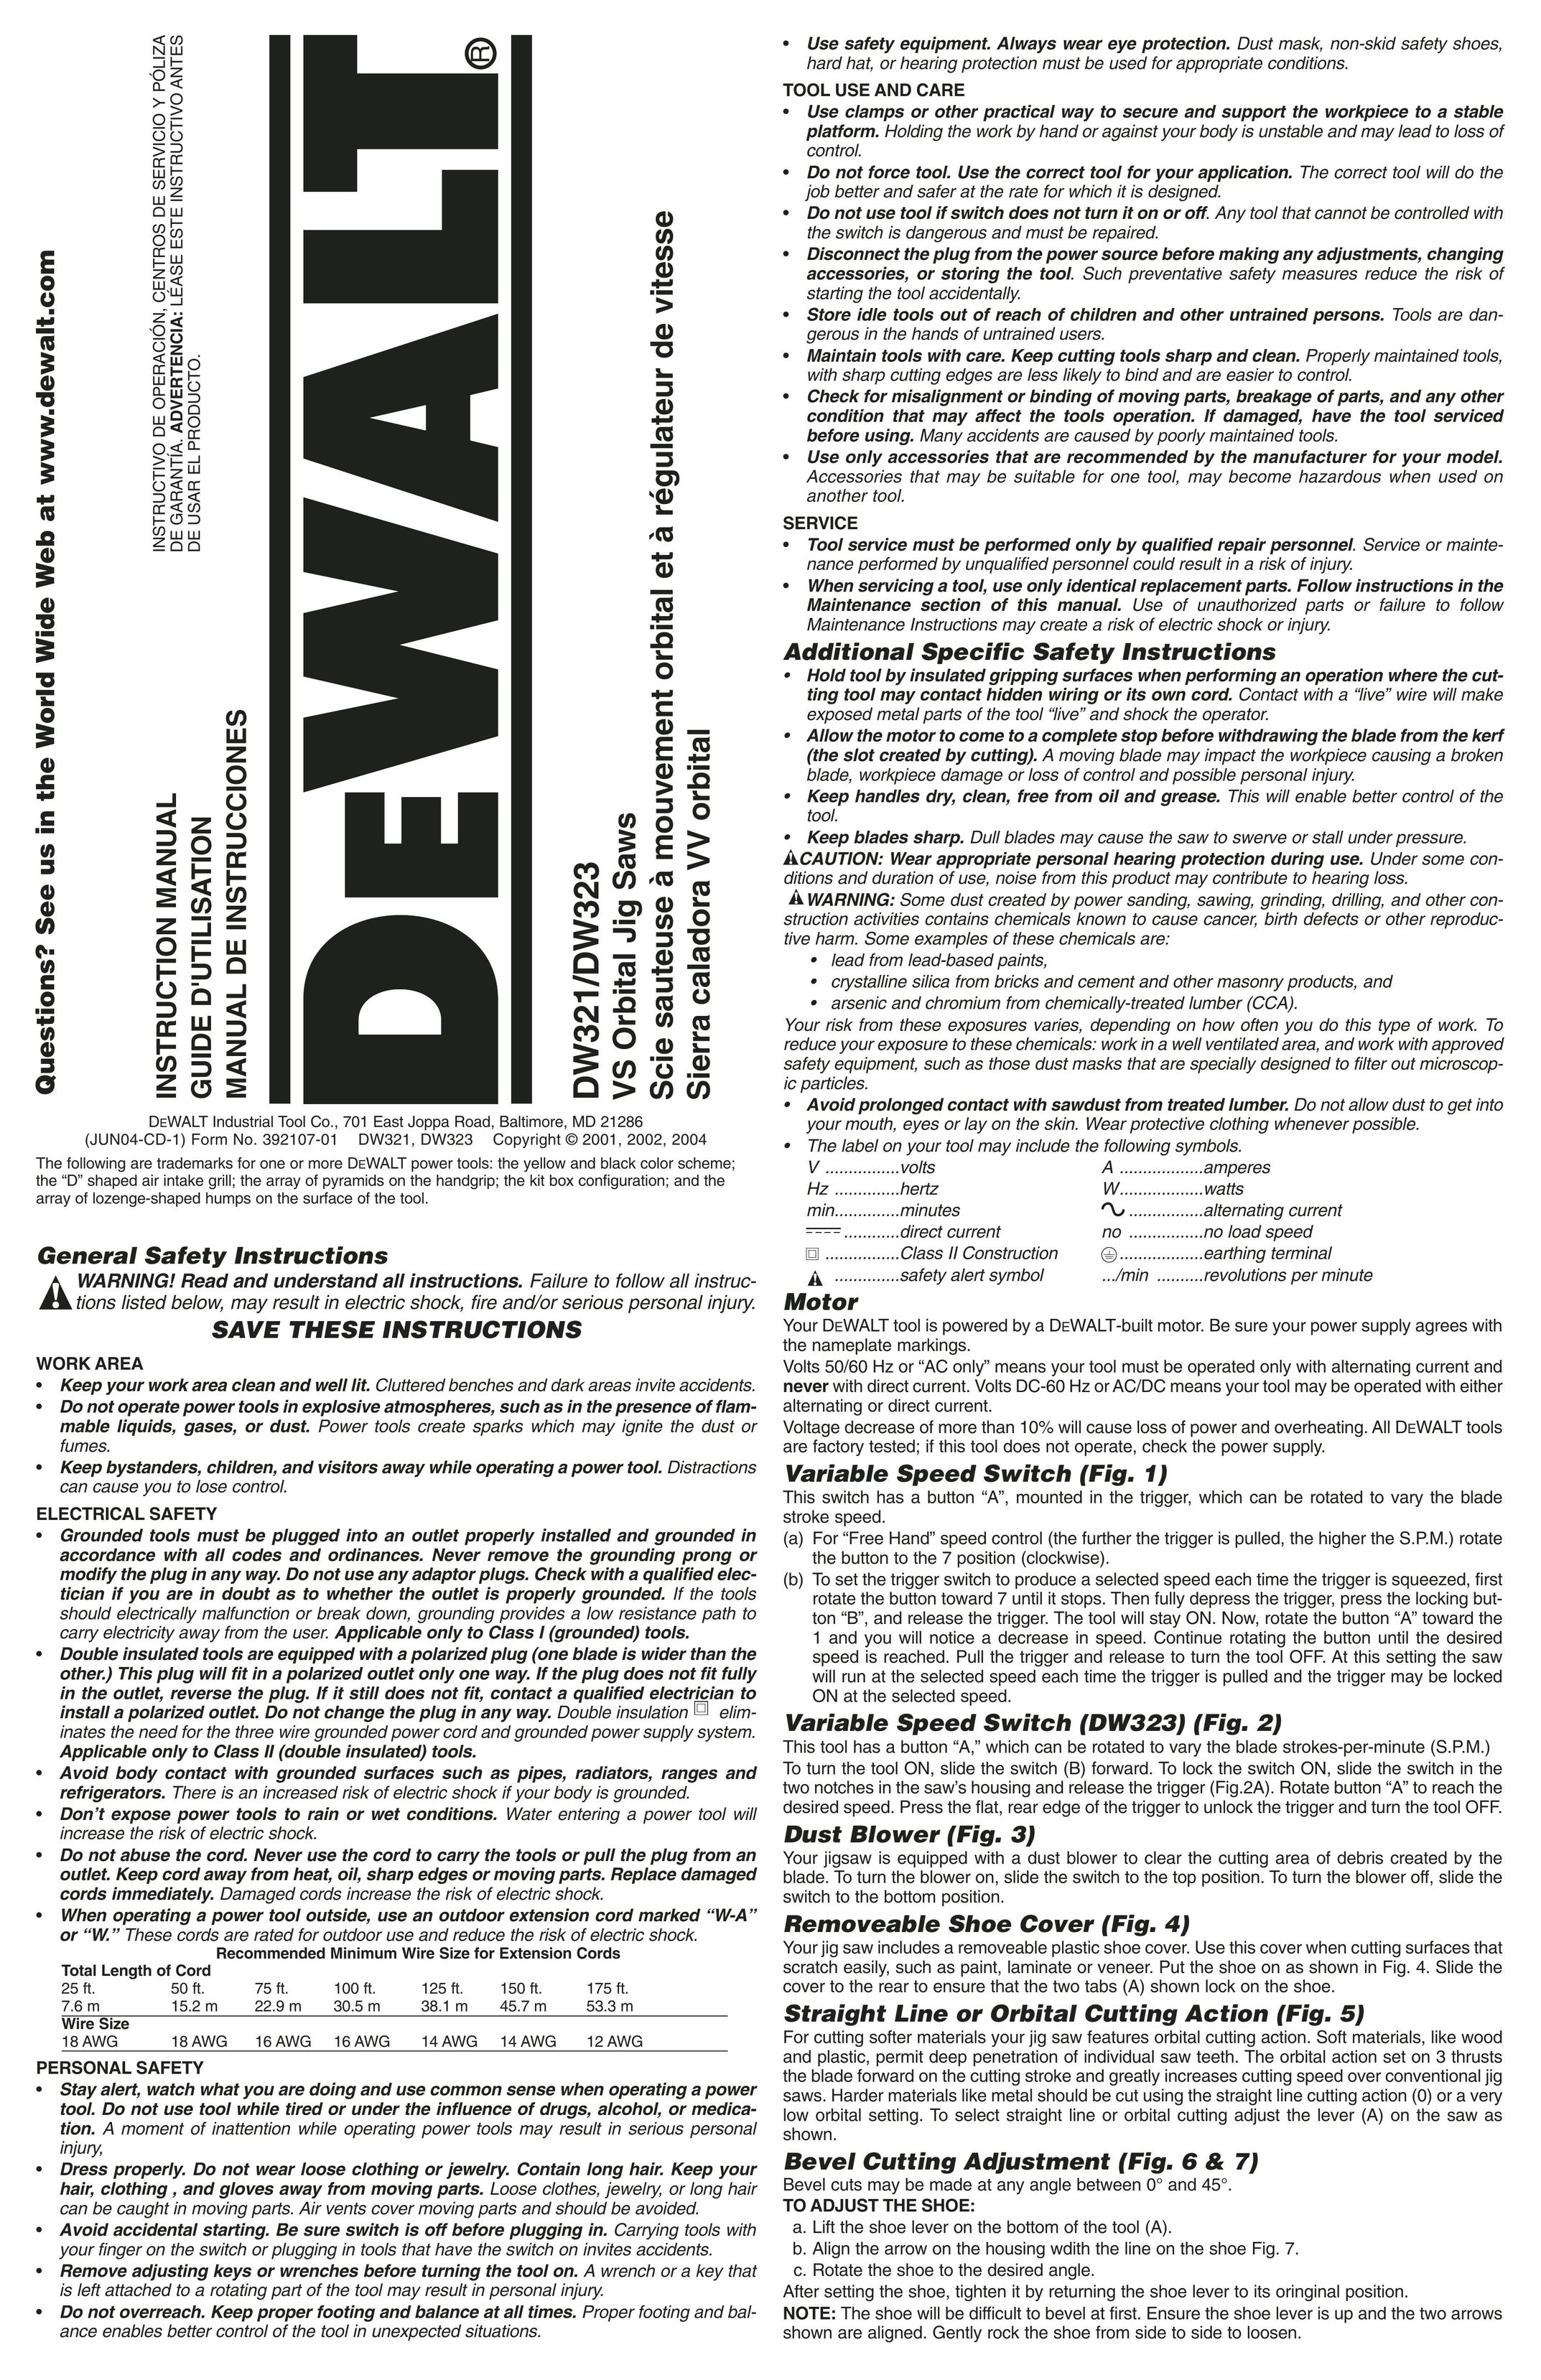 DeWalt DW321 Saw User Manual